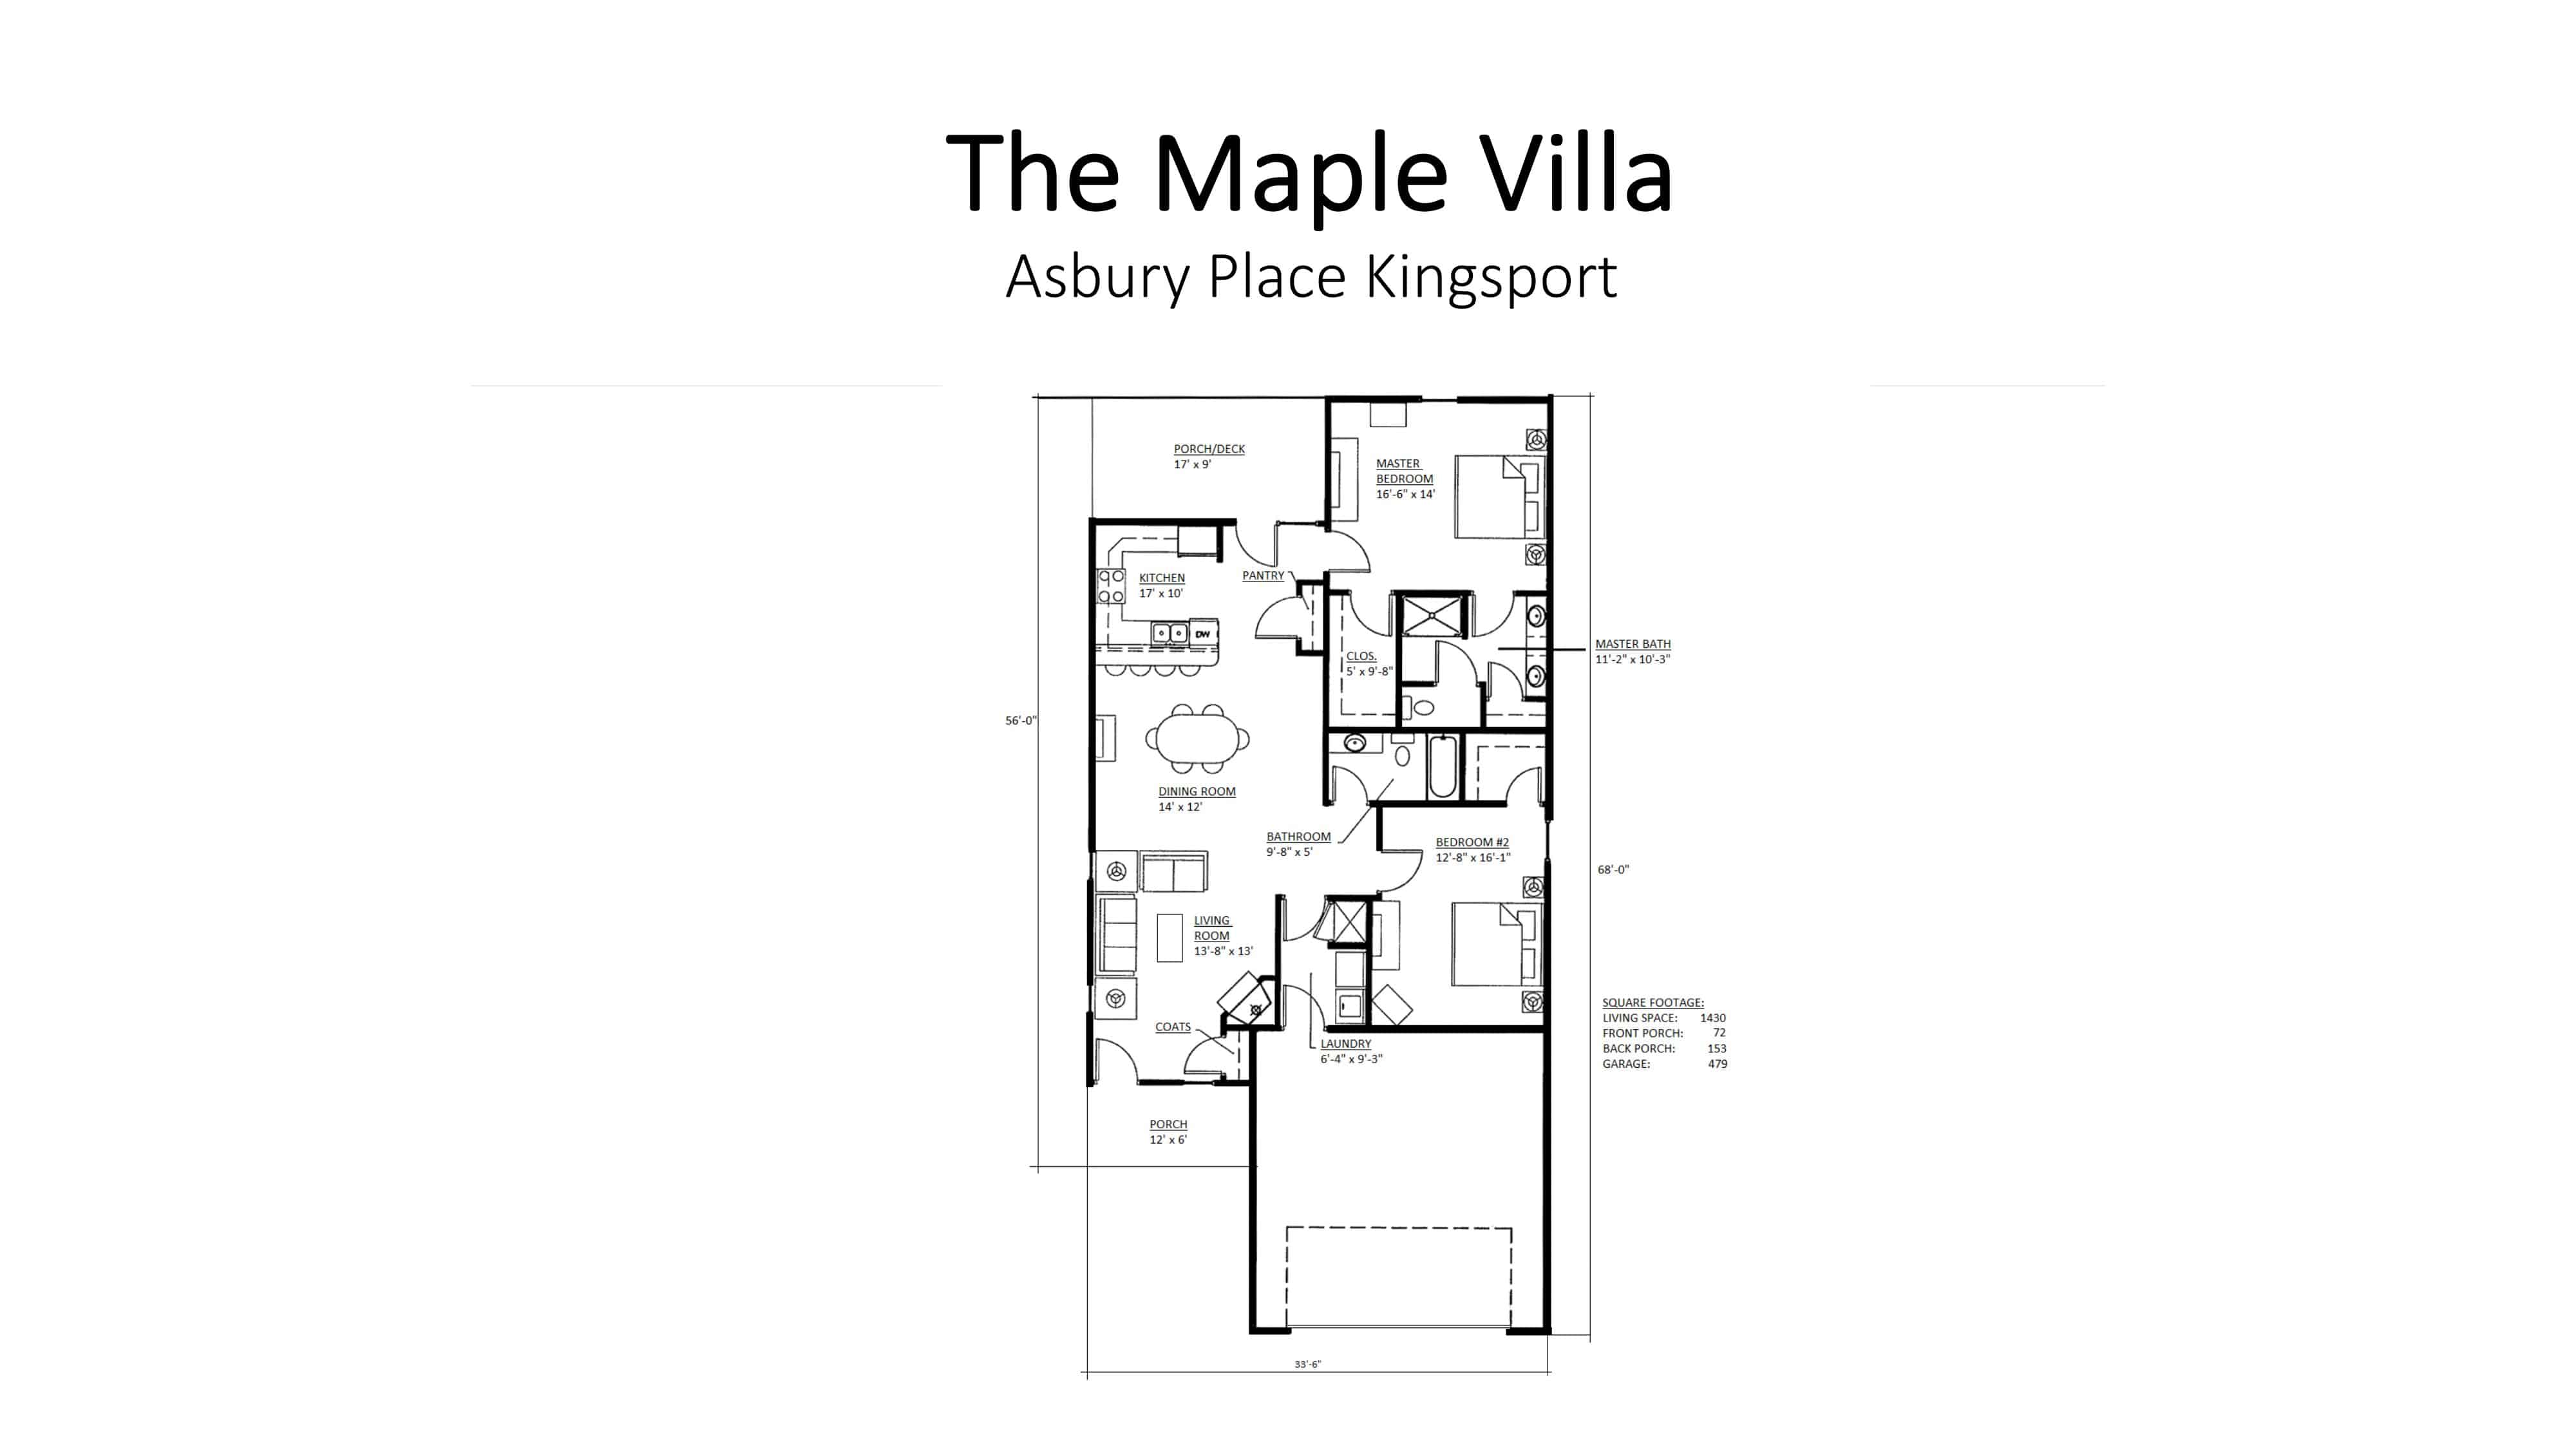 Asbury Place Kingsport The Maple Villa Floorplan